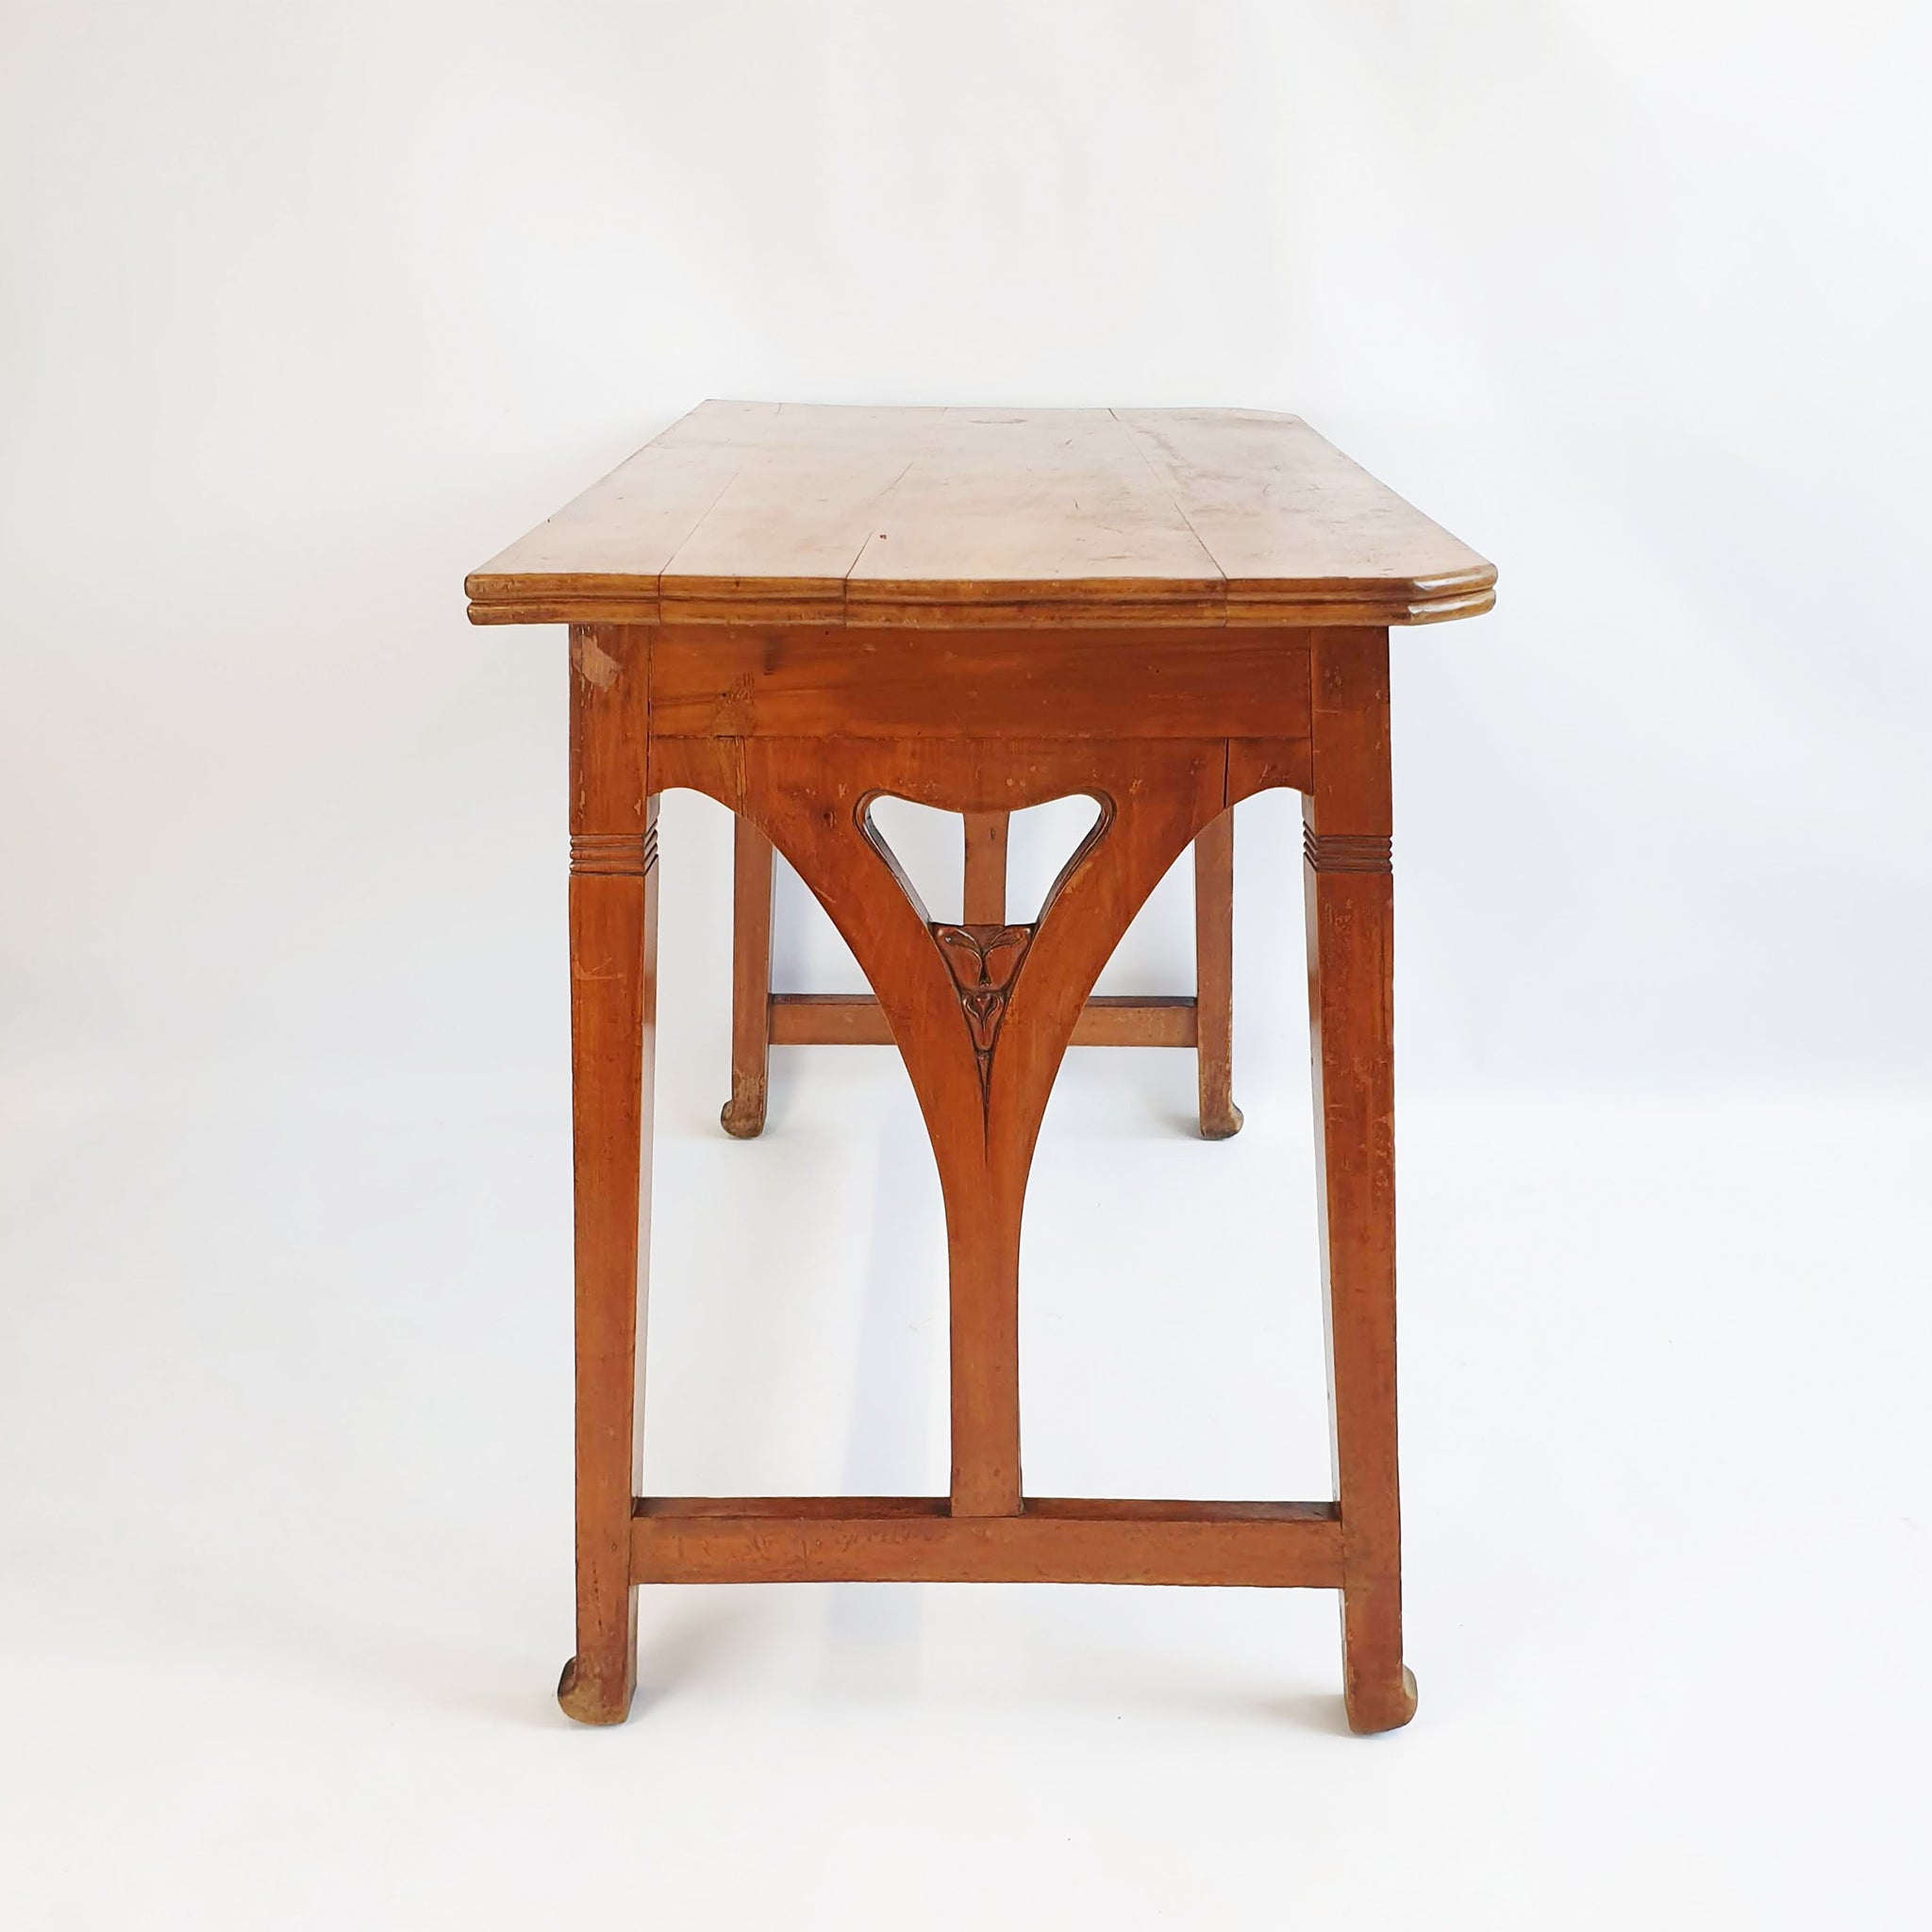 Antique Italian Art Nouveau table